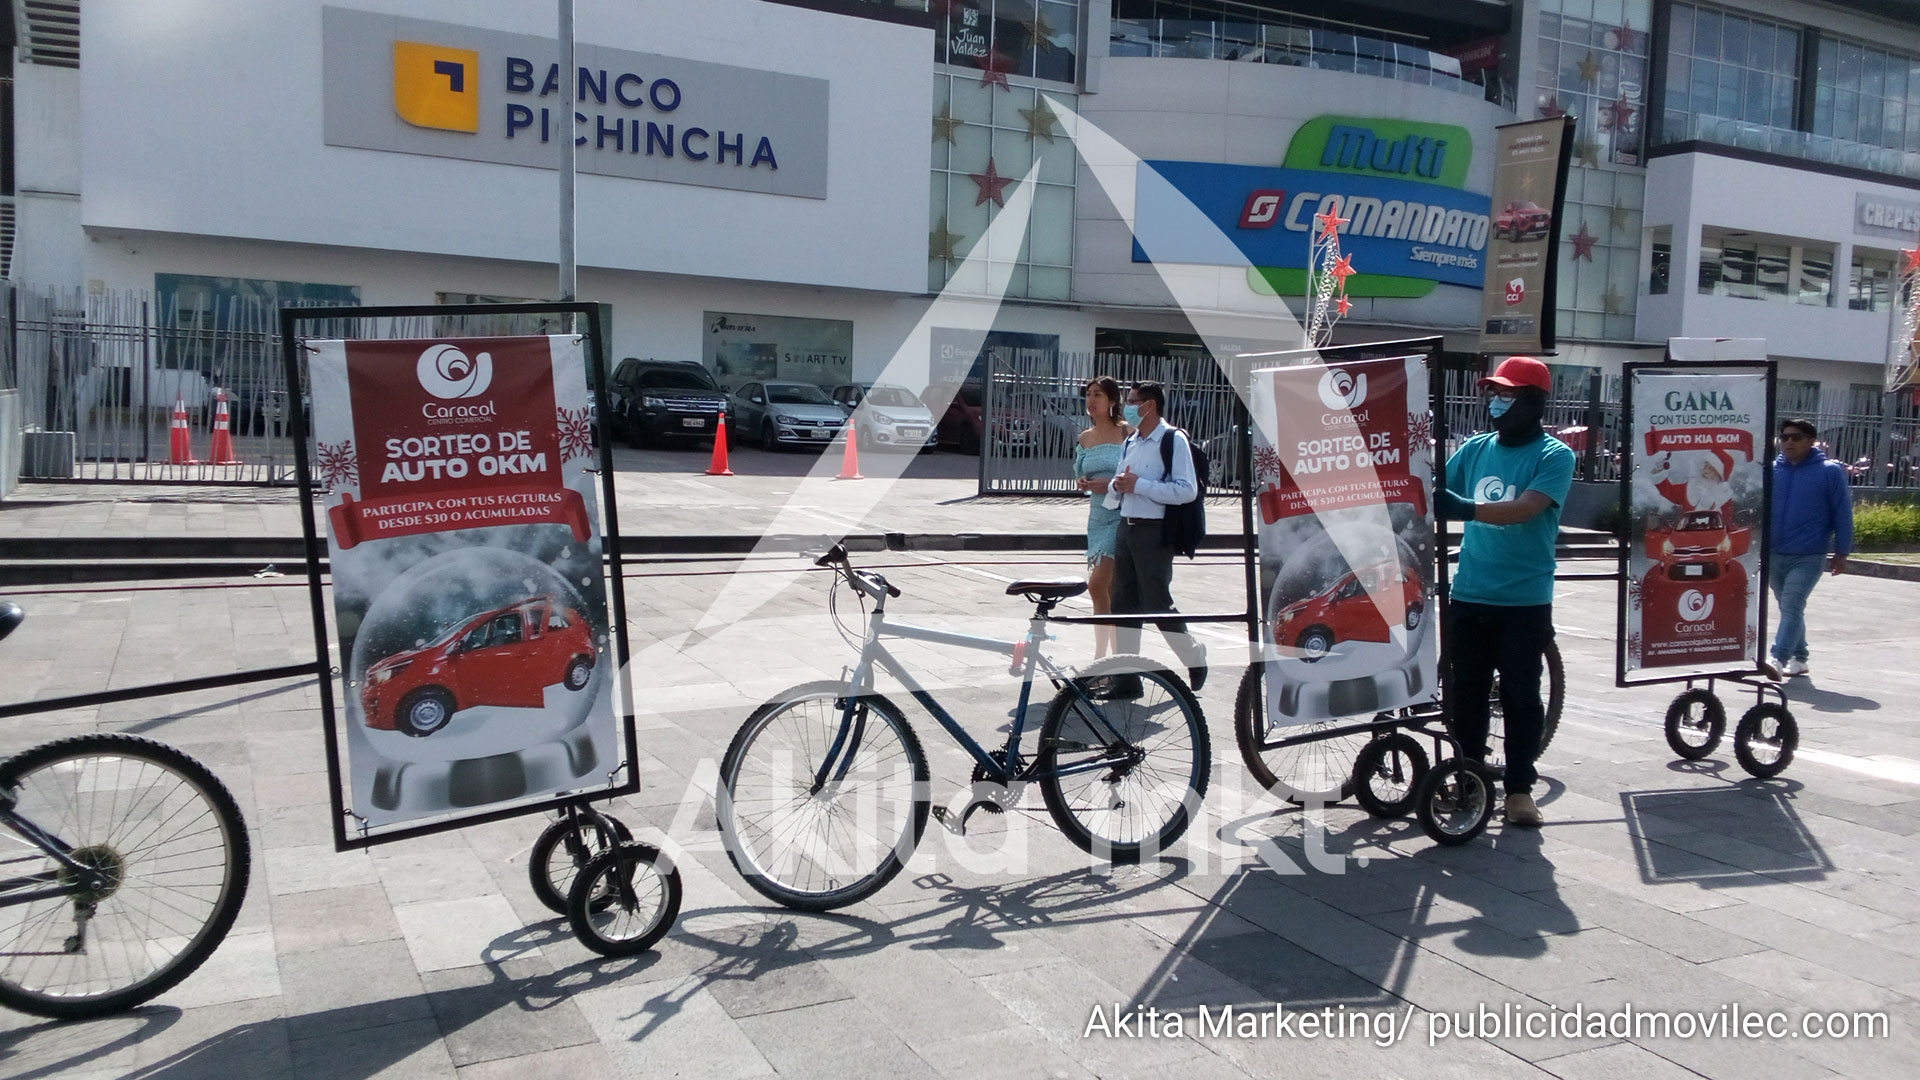 Publicidad móvil, Centro comercial Caracol, un espacio para visitar en Quito